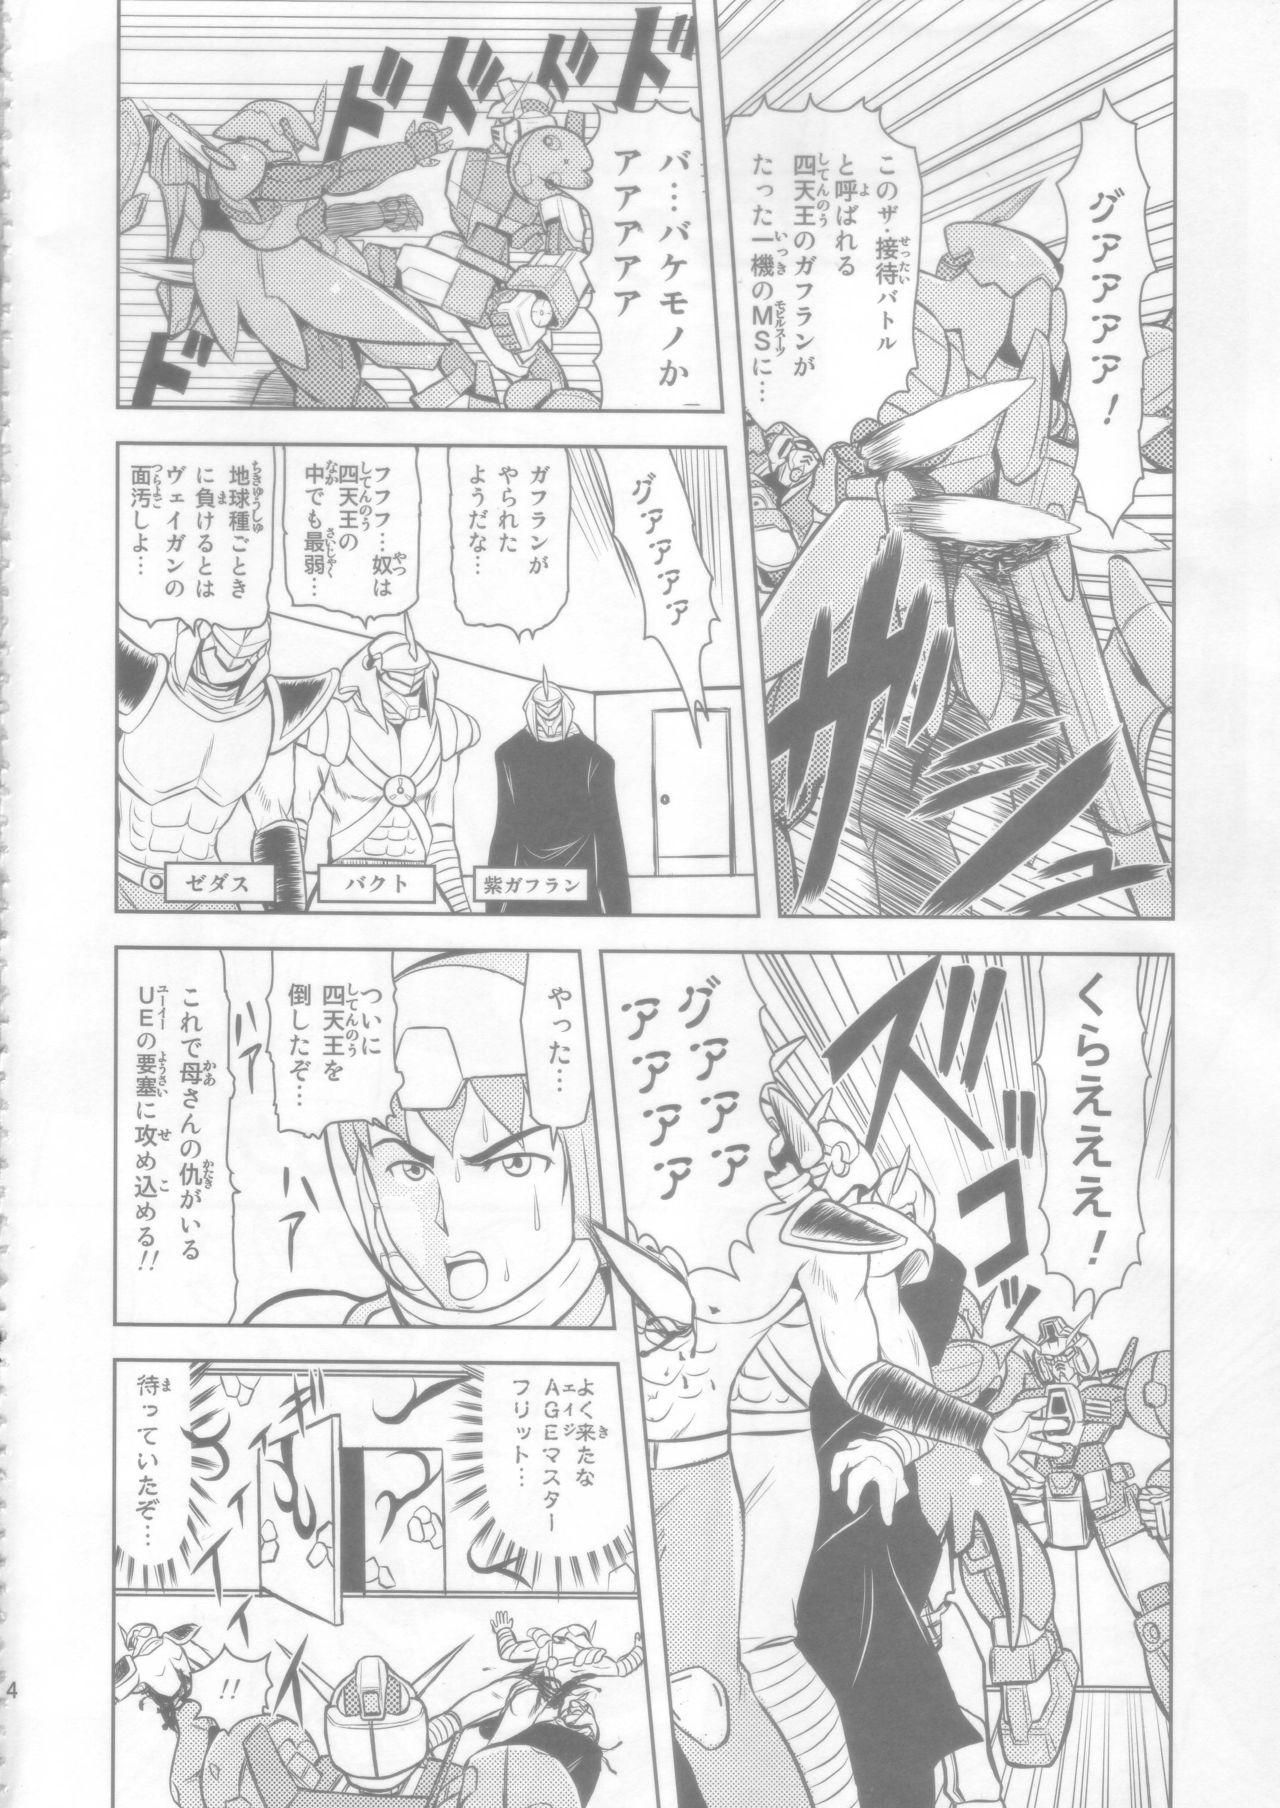 Bear AGE MASTER FLIT VIRGIN FLIGHT:04 - Gundam age Hidden Cam - Page 4